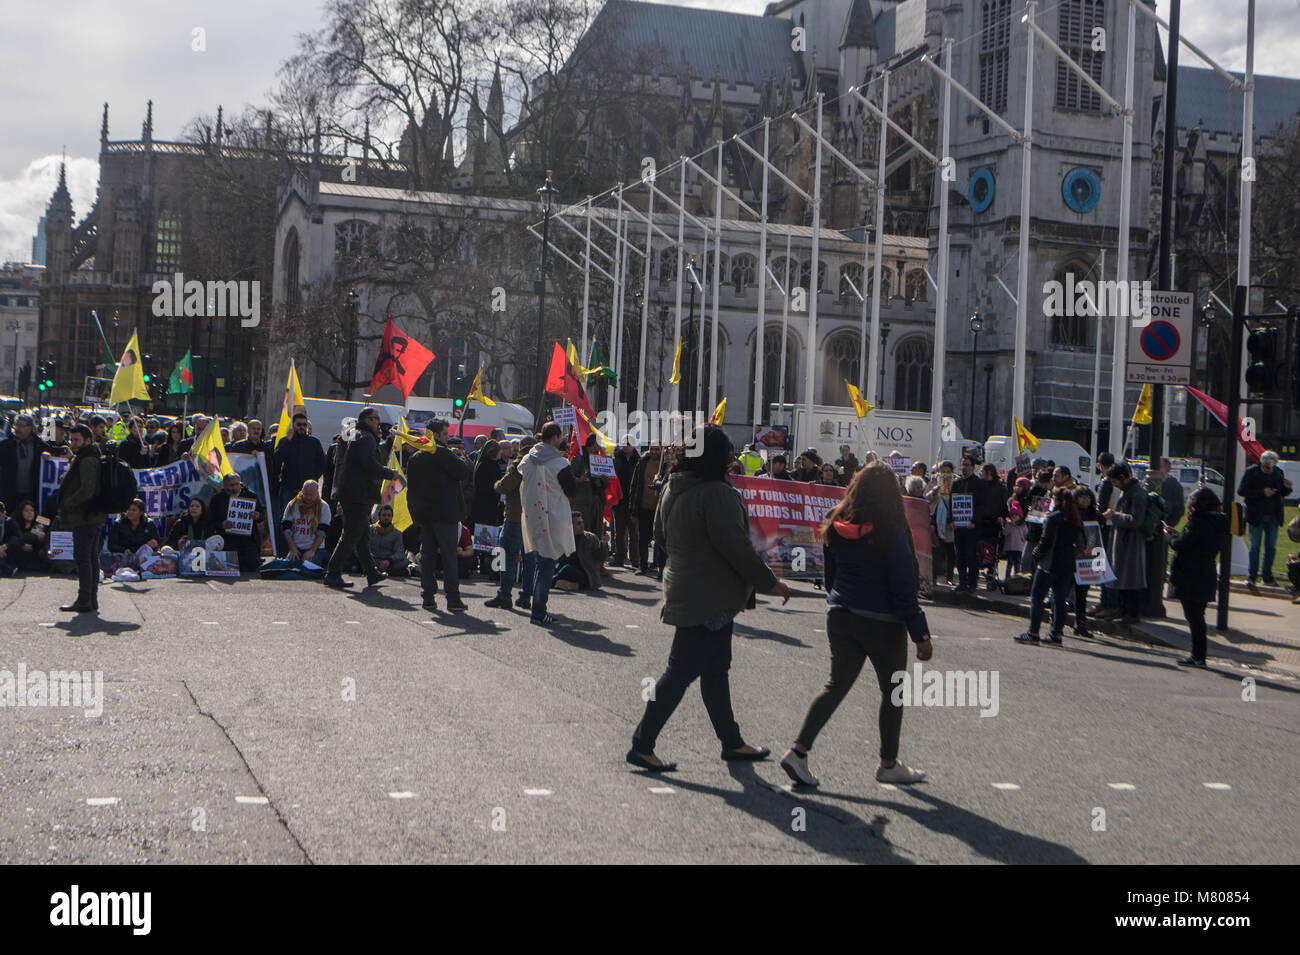 Londres, Royaume-Uni. 14 mars 2018, les militants kurdes Parlement bloc rue devant la Chambre des communes pour protester contre l'agression turque Crédit : Ian Davidson/Alamy Live News Banque D'Images